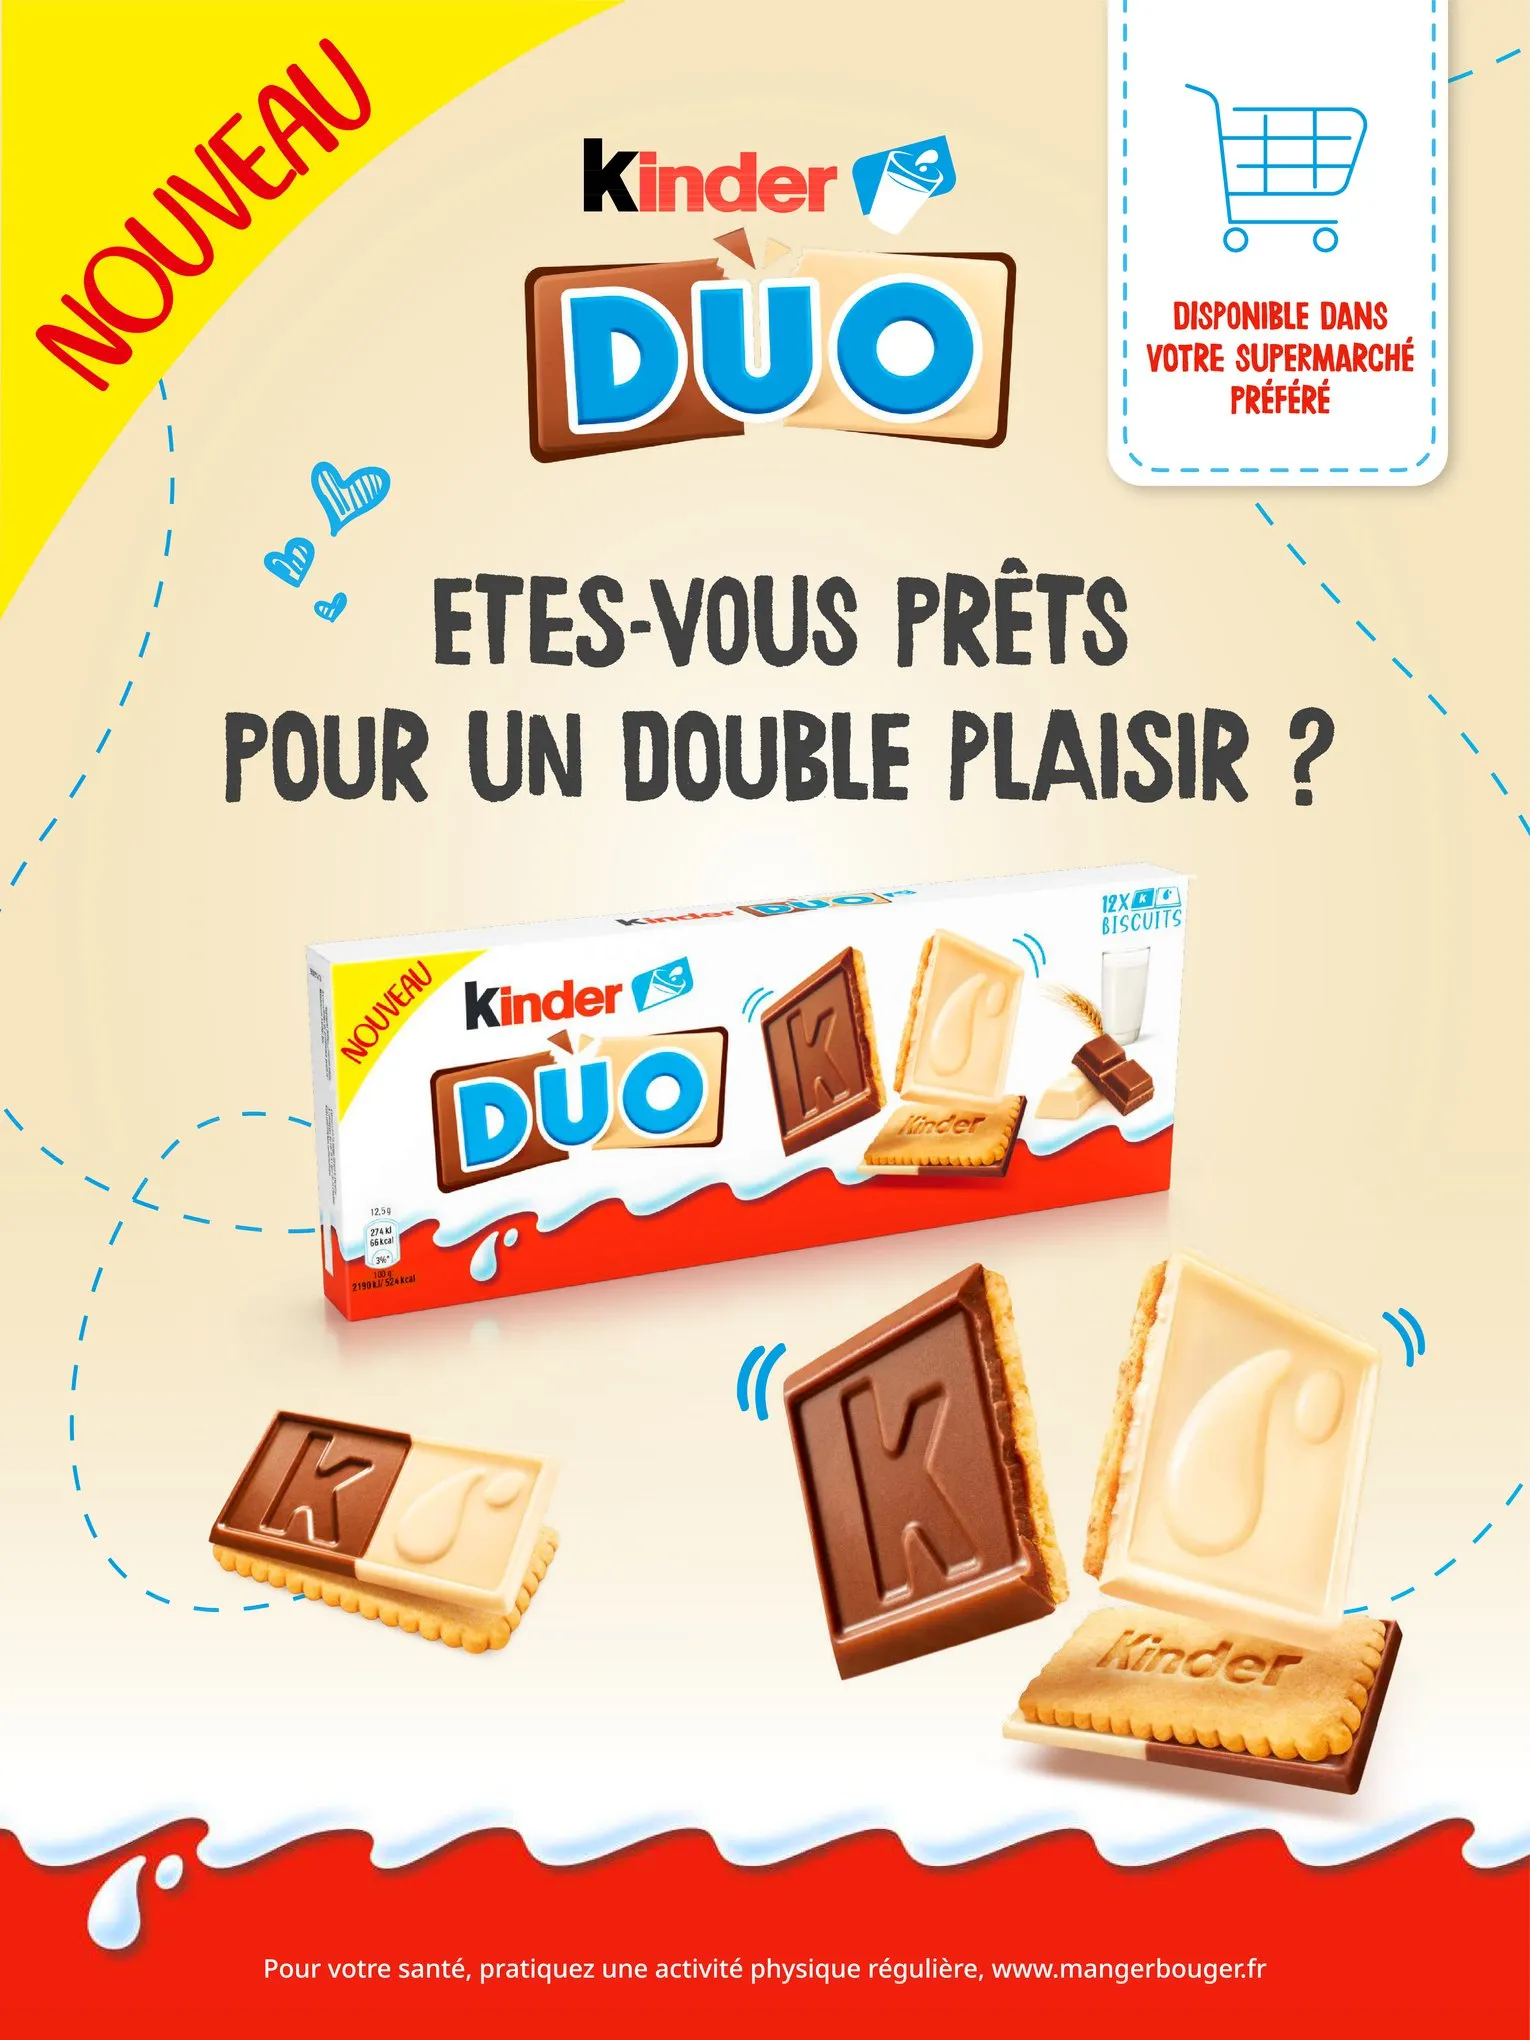 Catalogue NOUVEAU Kinder Duo, le biscuit à partager !, page 00001